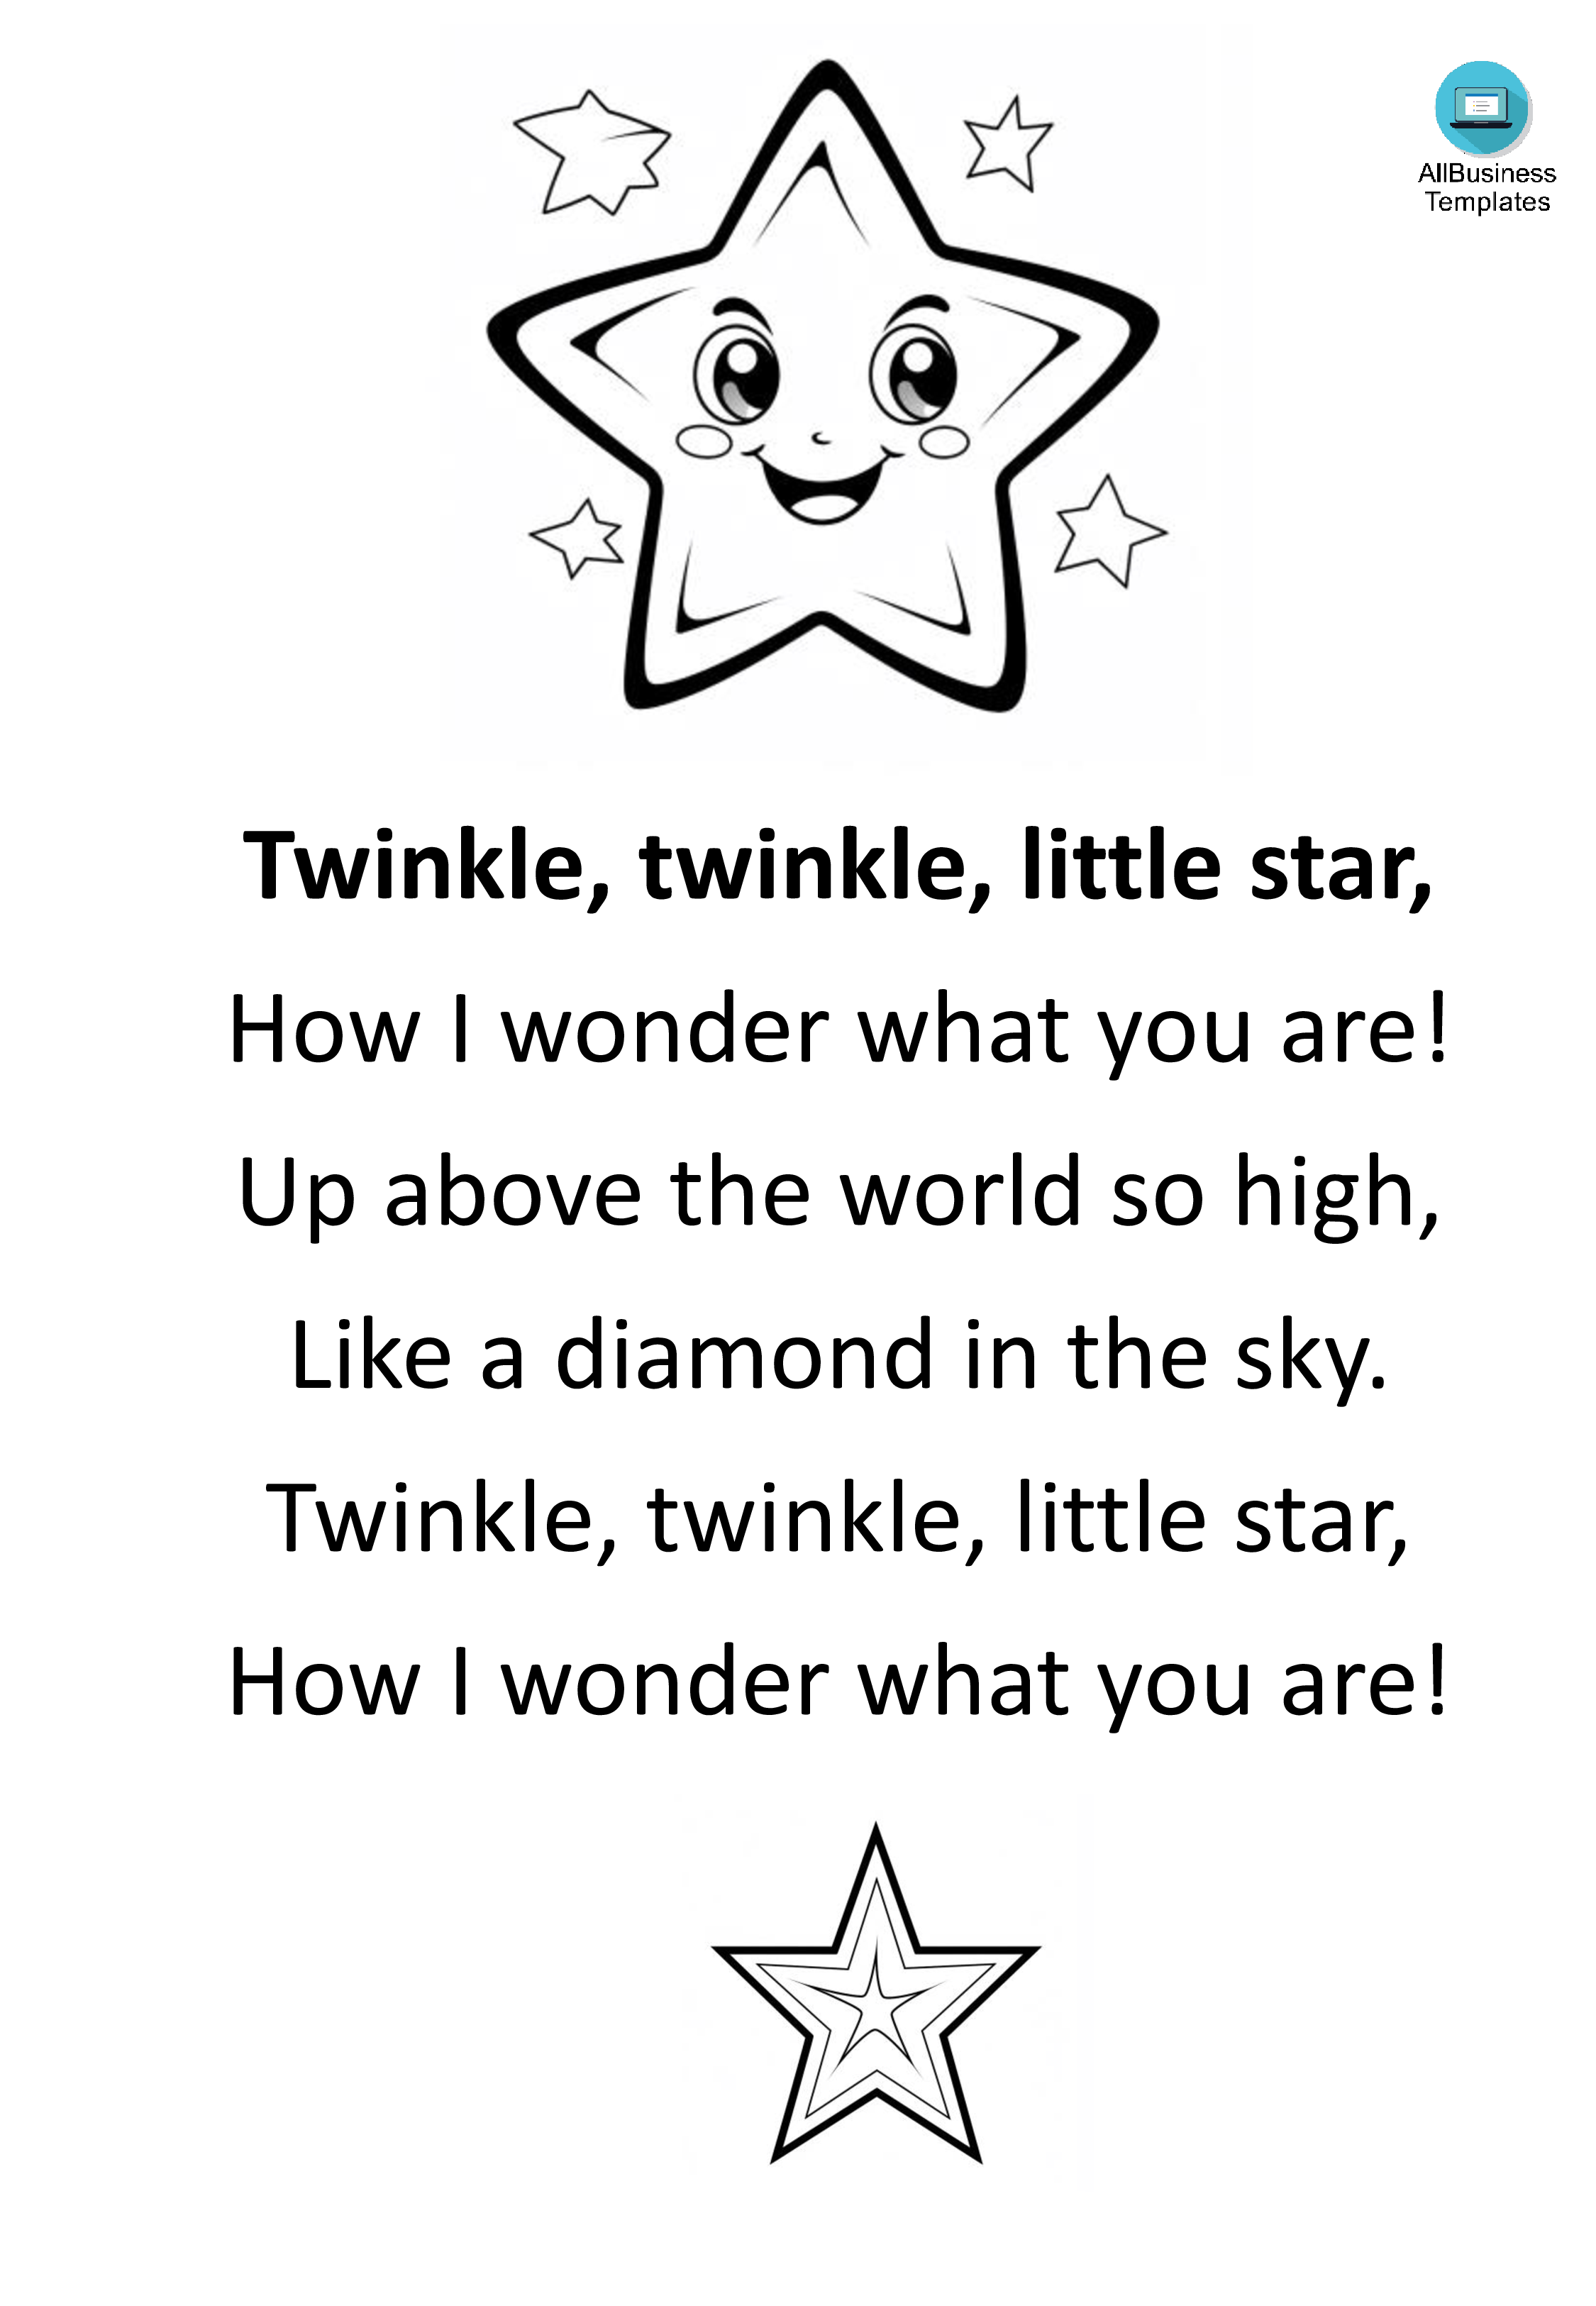 twinkle twinkle little star template